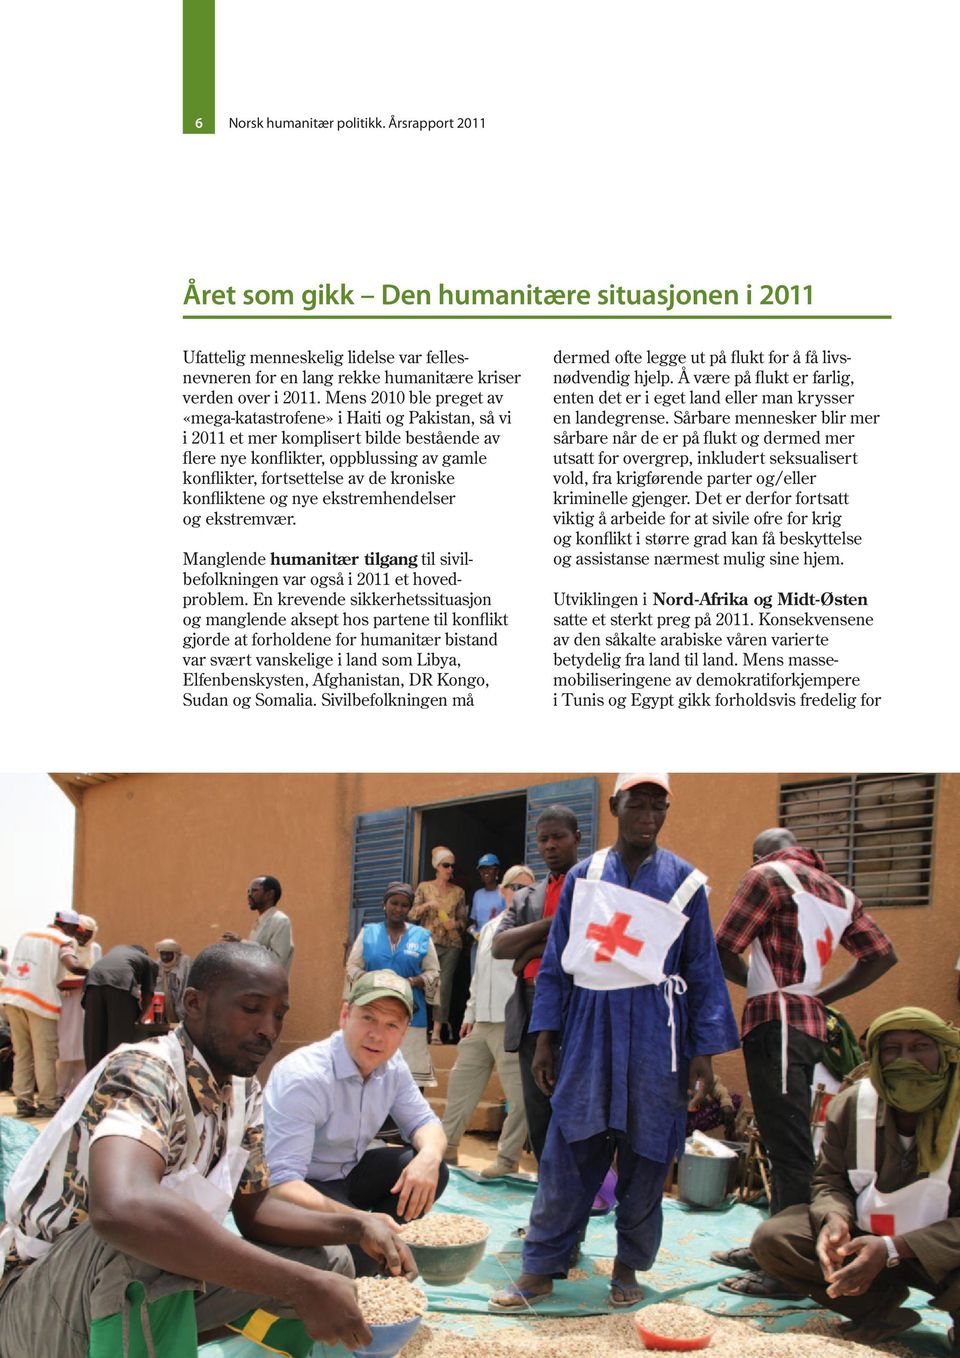 konfliktene og nye ekstremhendelser og ekstremvær. Manglende humanitær tilgang til sivilbefolkningen var også i 2011 et hovedproblem.